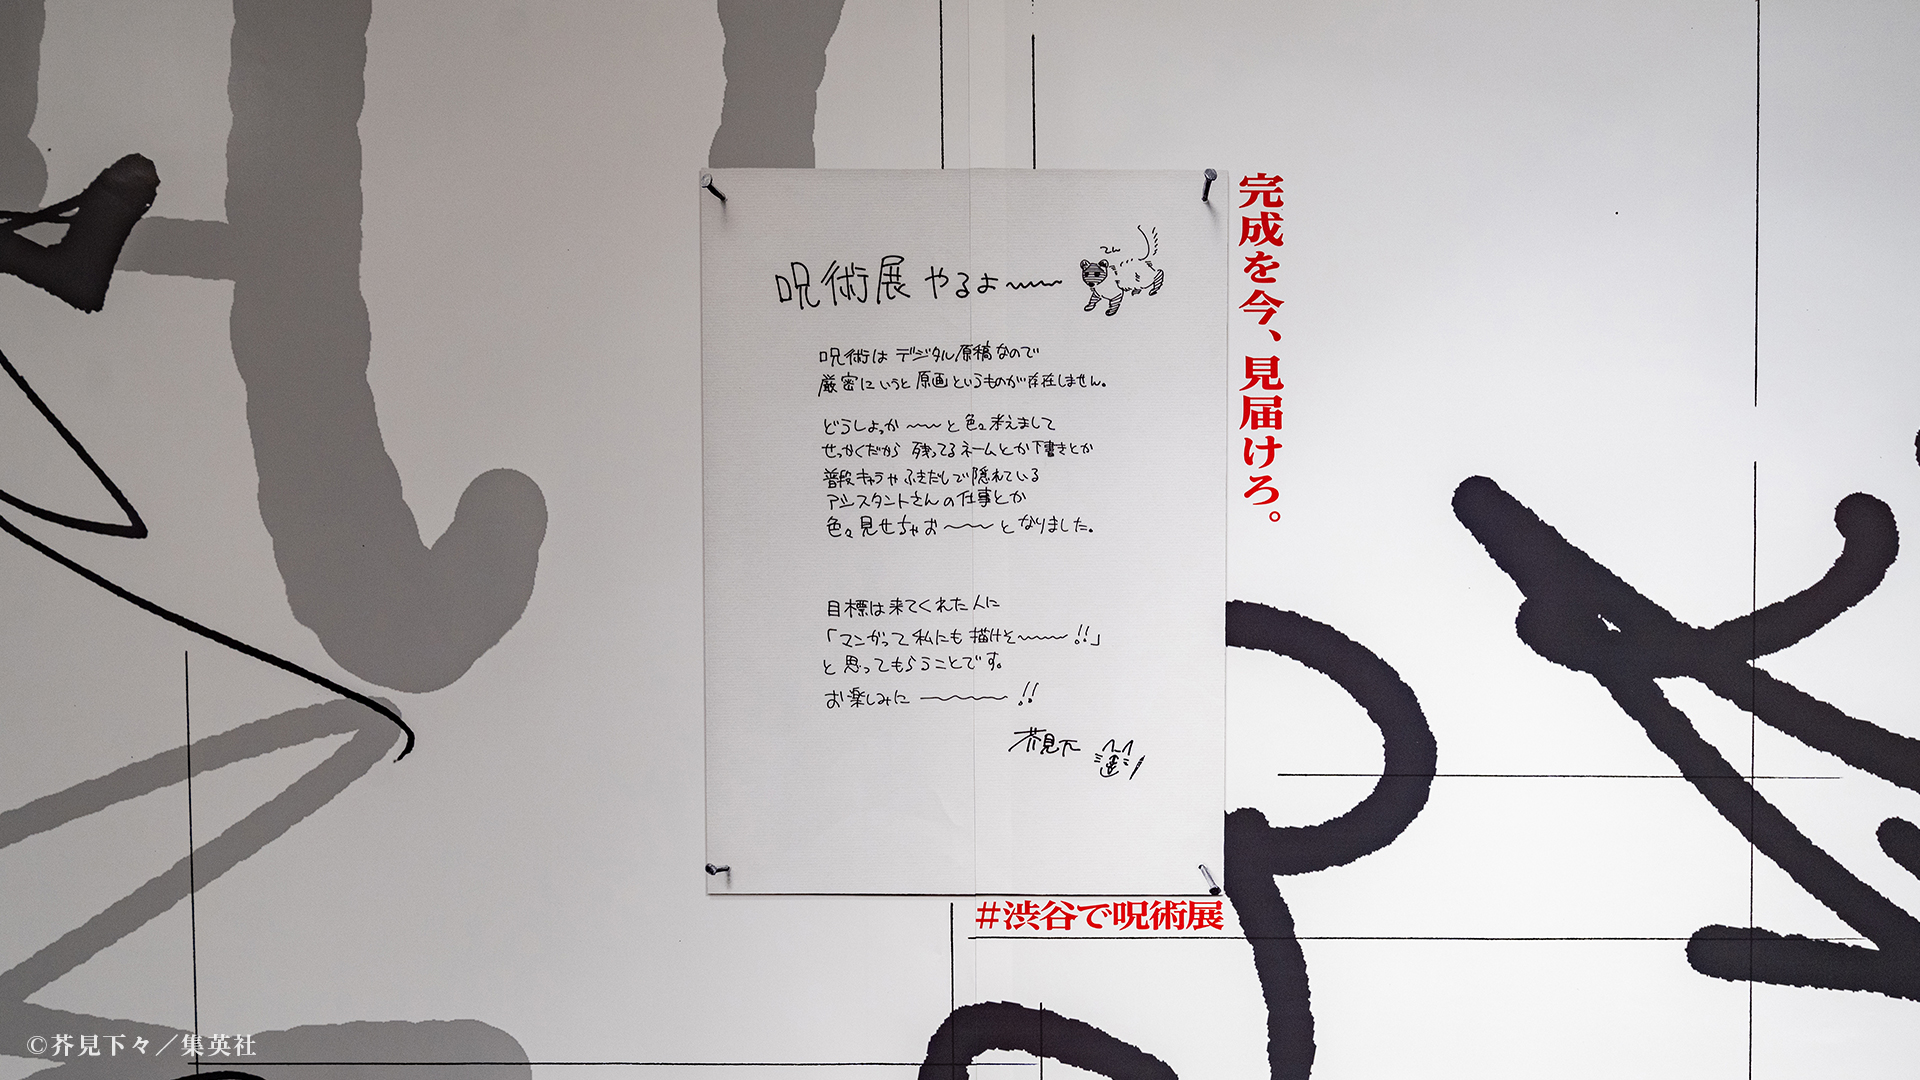 《咒术回战》官方放出涩谷站宣传展览实拍 全是线稿过于抽象